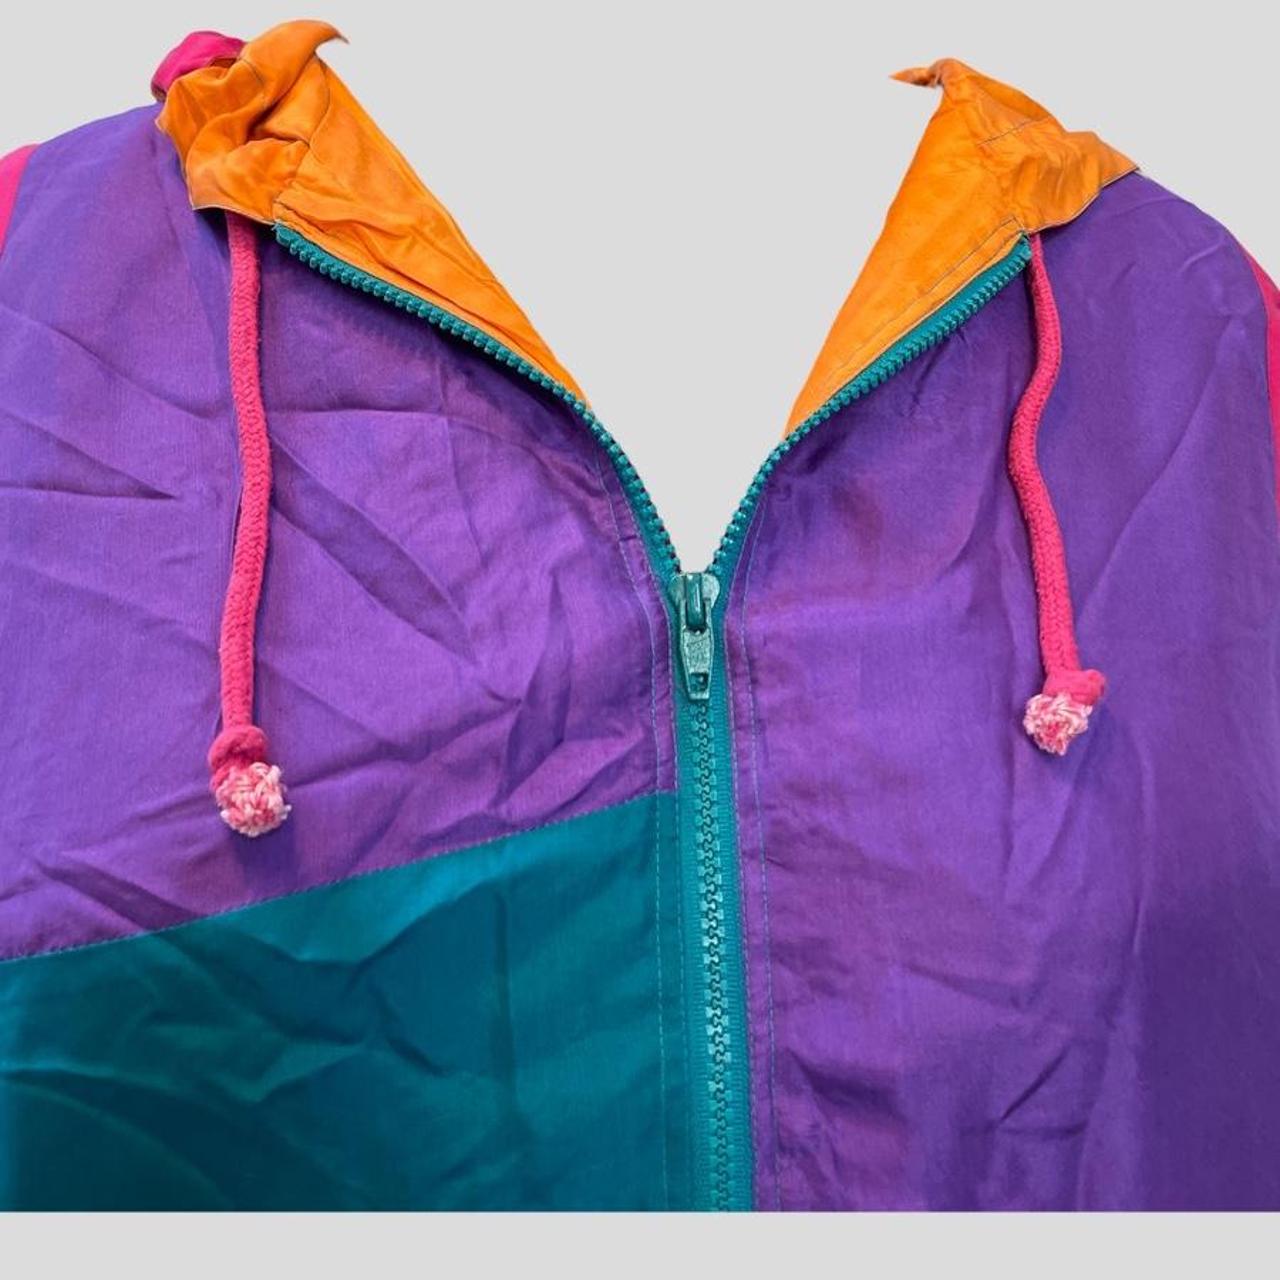 Lauren Brooke Women's Orange and Purple Jacket (2)